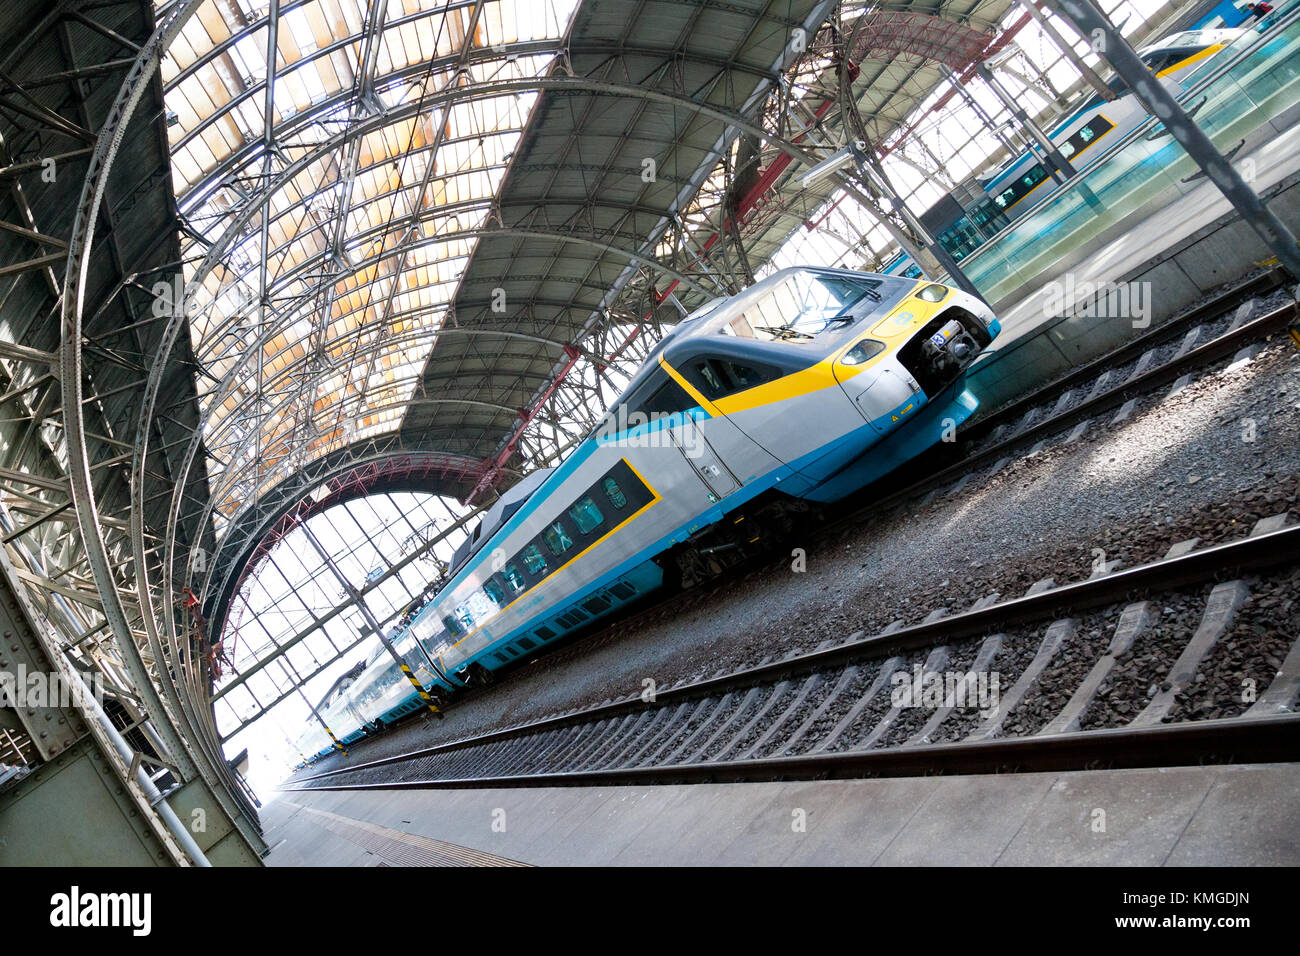 Le ferrovie ceche - sc super city pendolino 680 treno, wilson stazione ferroviaria principale (Hlavni nadrazi), Praga, Repubblica ceca Foto Stock